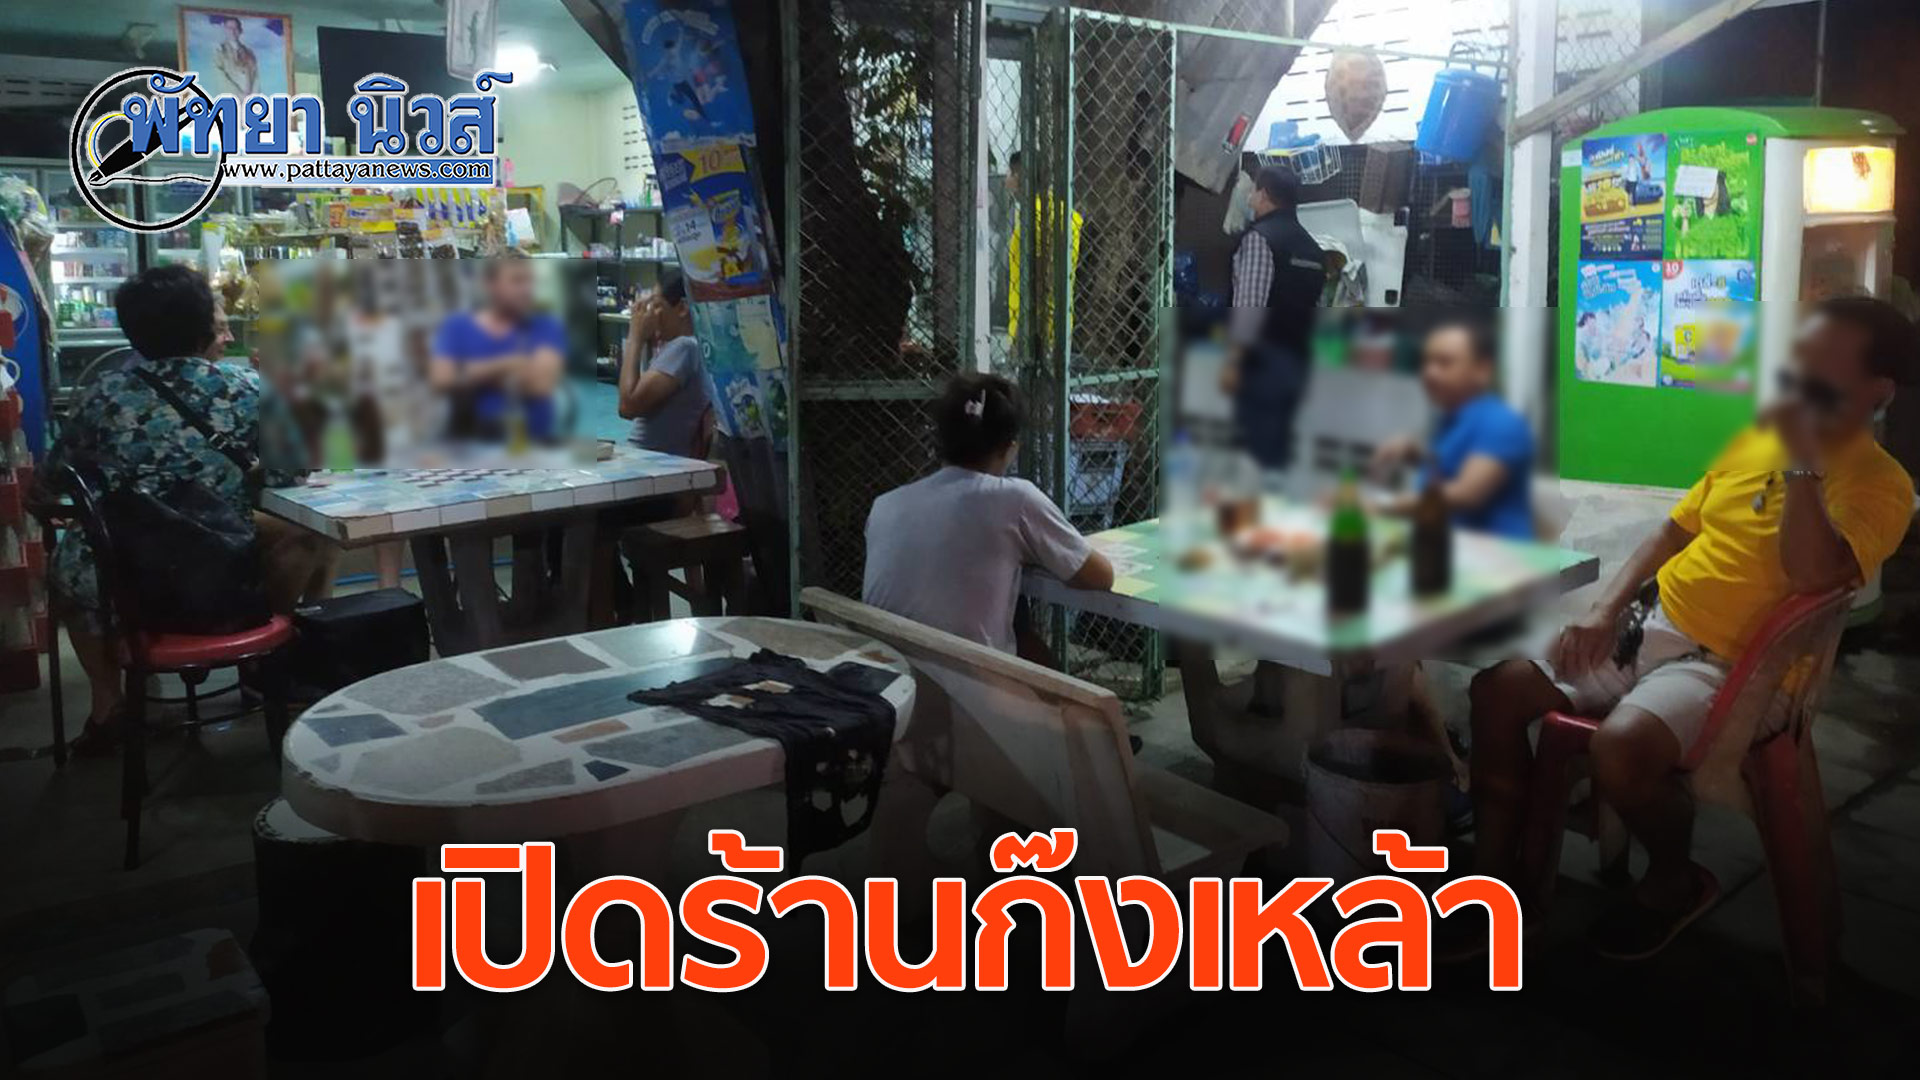 จับร้านลักลอบให้ลูกค้าทั้งไทย-ต่างชาติ นั่งดื่มแอลกอฮอล์ ฝ่าฝืนพ.ร.ก.ฉุกเฉิน